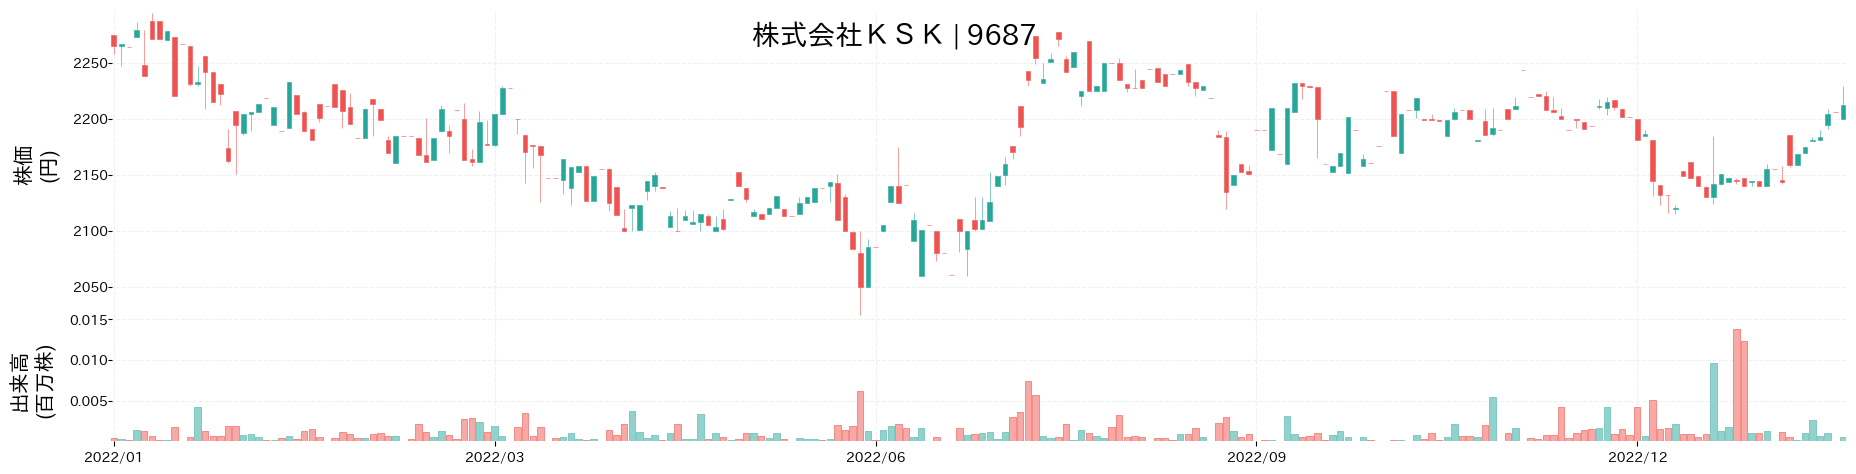 KSKの株価推移(2022)